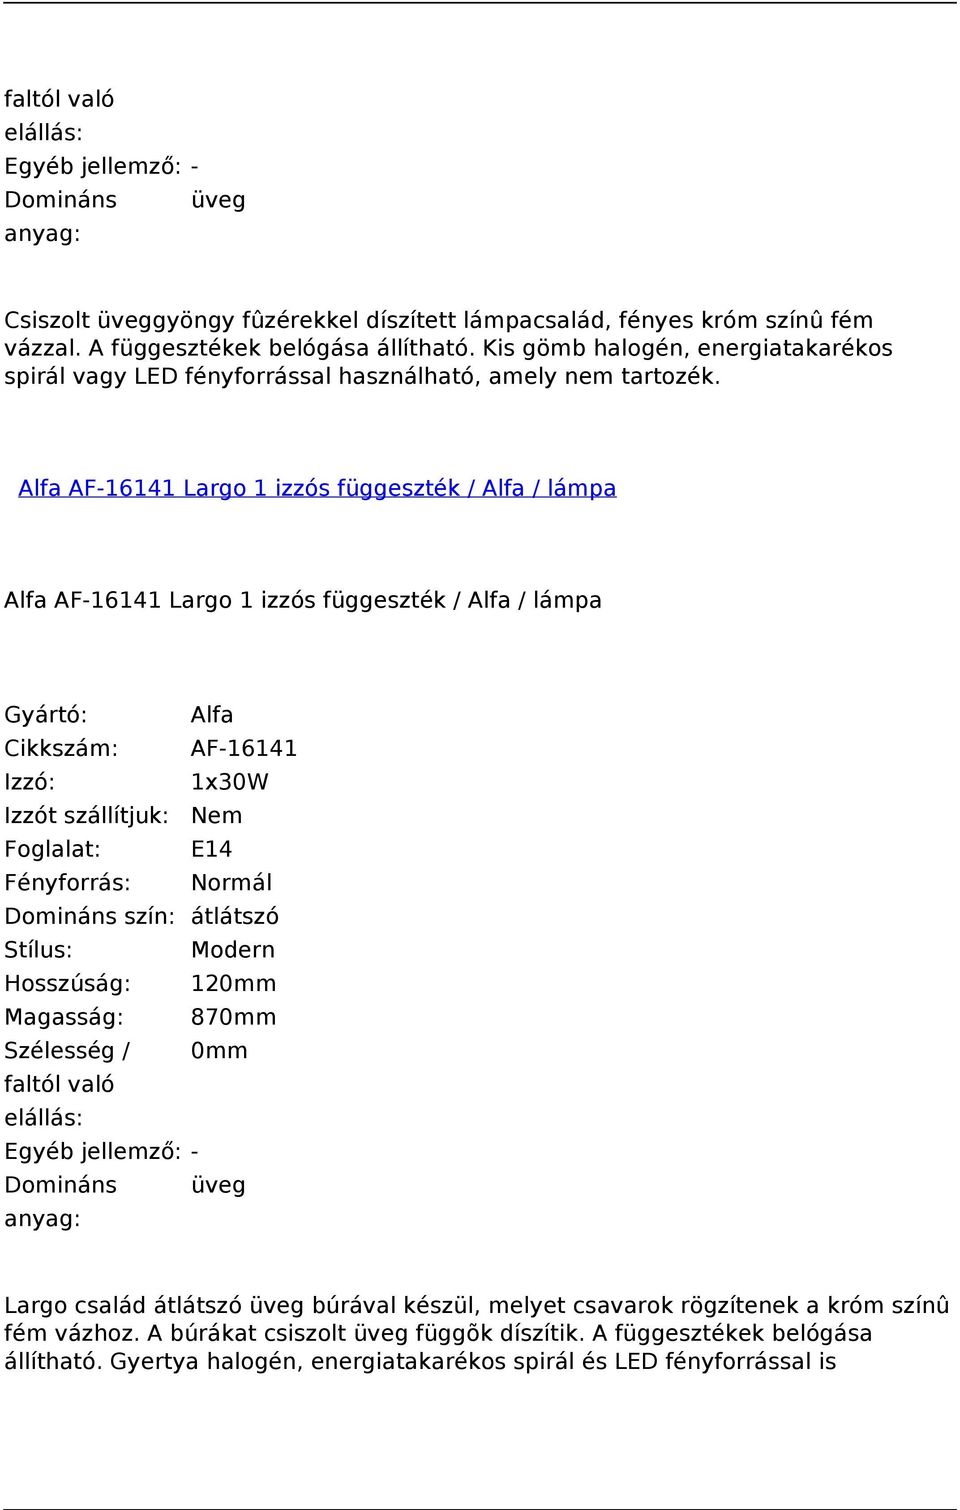 Alfa AF-16141 Largo 1 izzós függeszték / Alfa / lámpa Alfa AF-16141 Largo 1 izzós függeszték / Alfa / lámpa Cikkszám: AF-16141 Izzó: 1x30W Foglalat: E14 Domináns szín: átlátszó Stílus: